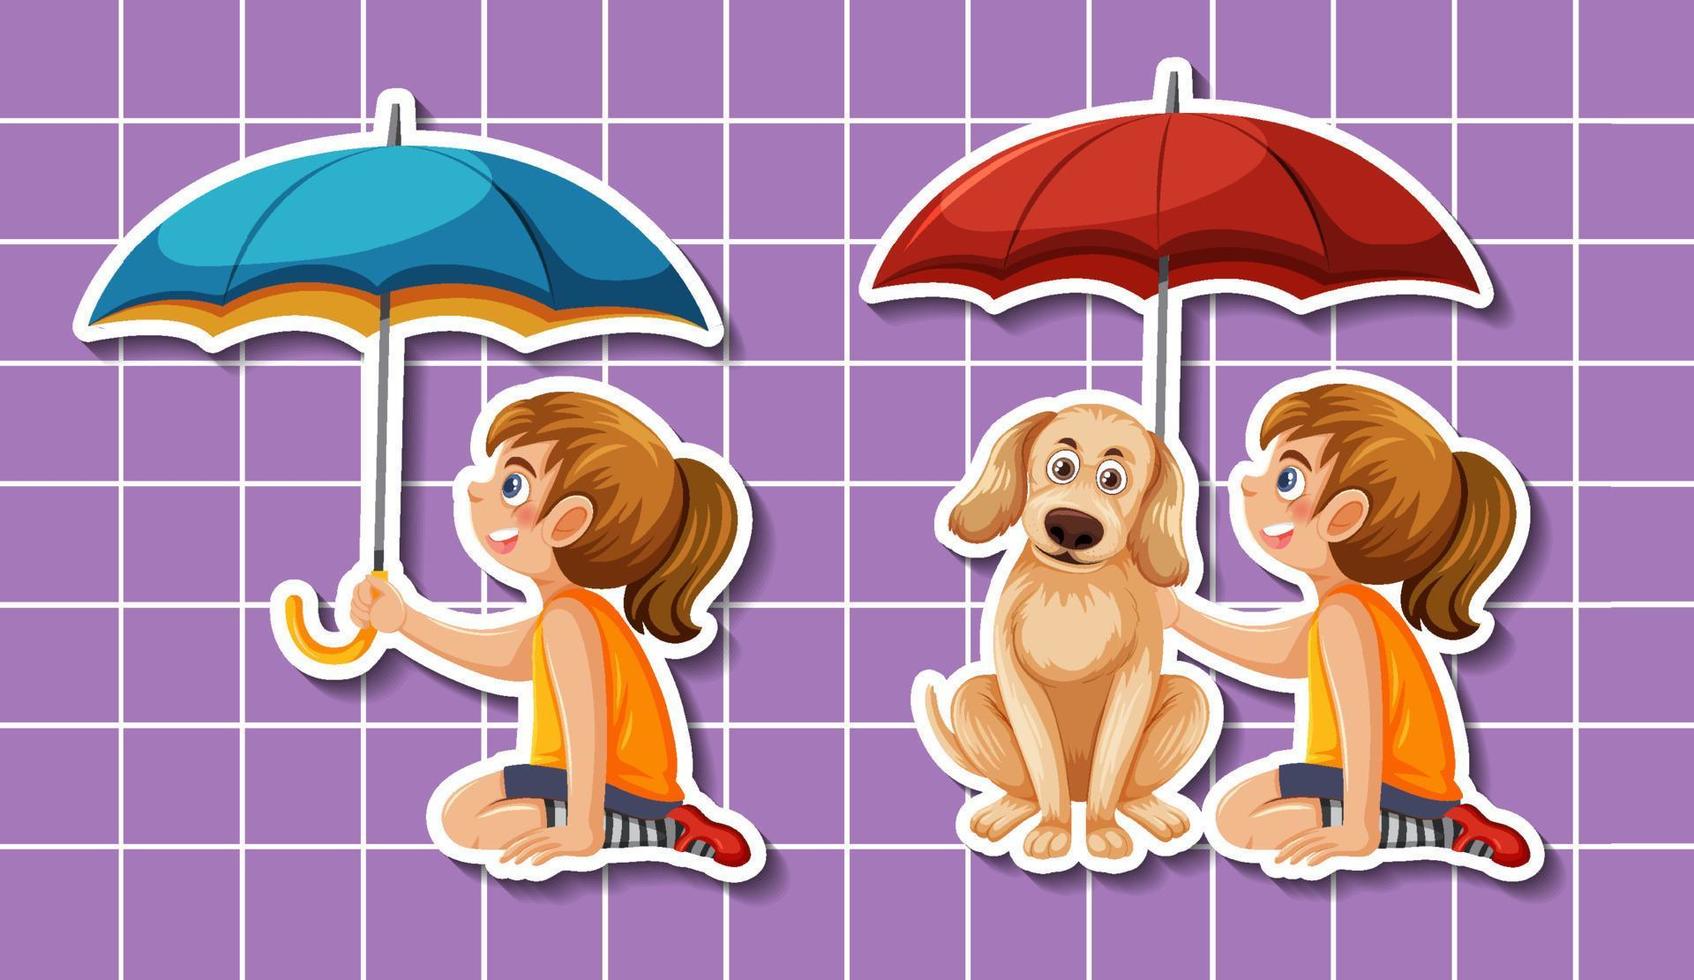 ensemble de personnage de dessin animé tenant un parapluie vecteur